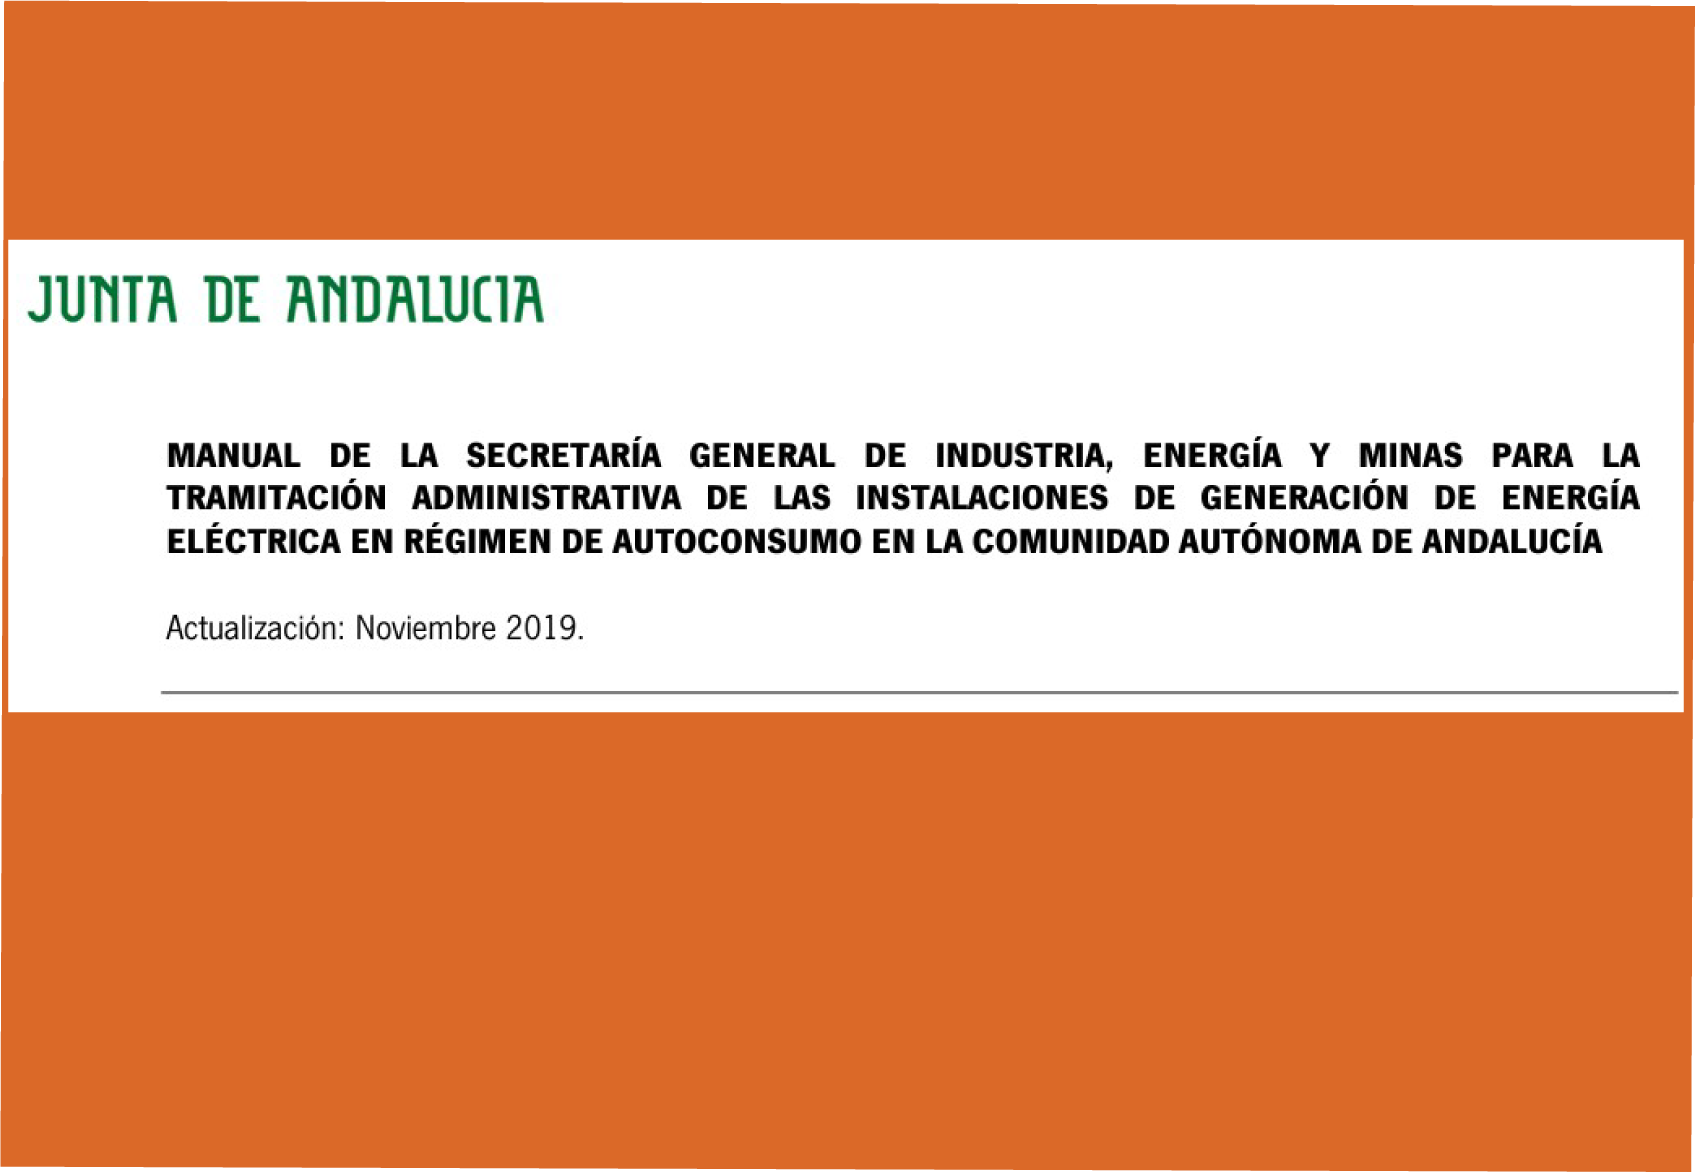 Manual de la Secretaría General de Industria, Energía y Minas para la tramitación administrativa de las instalaciones de generación de energía eléctrica en régimen de autoconsumo en la Comunidad Autónoma de Andalucía